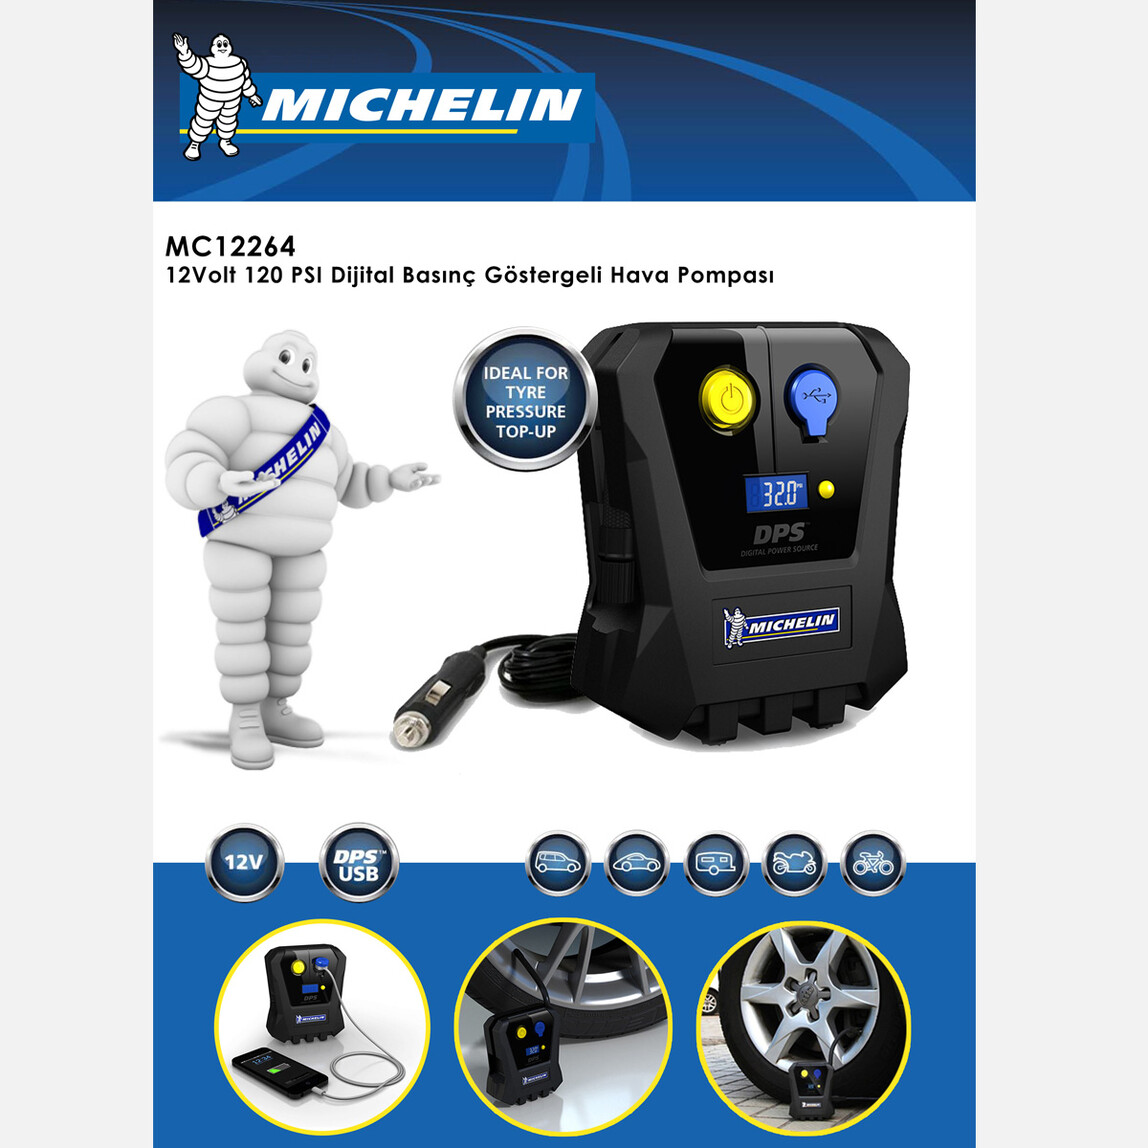 Michelin MC12264 12V 120PSI Dijital Basınç Göstergeli Hava Pompası_6